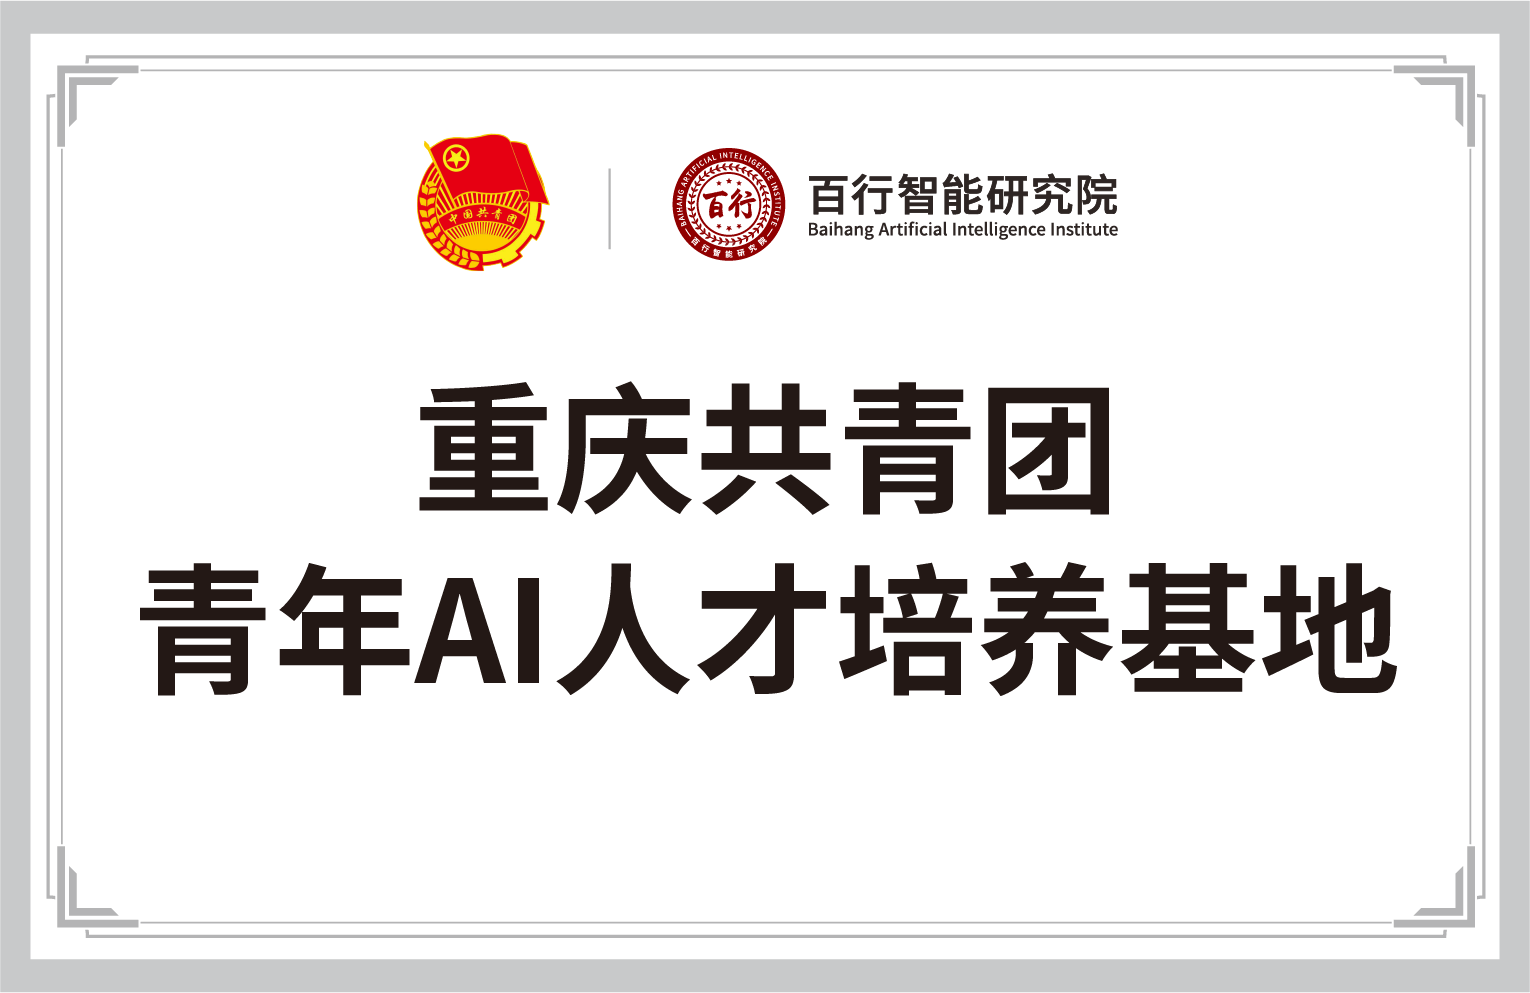 重庆共青团-百行智能研究院-青年AI人才培养基地